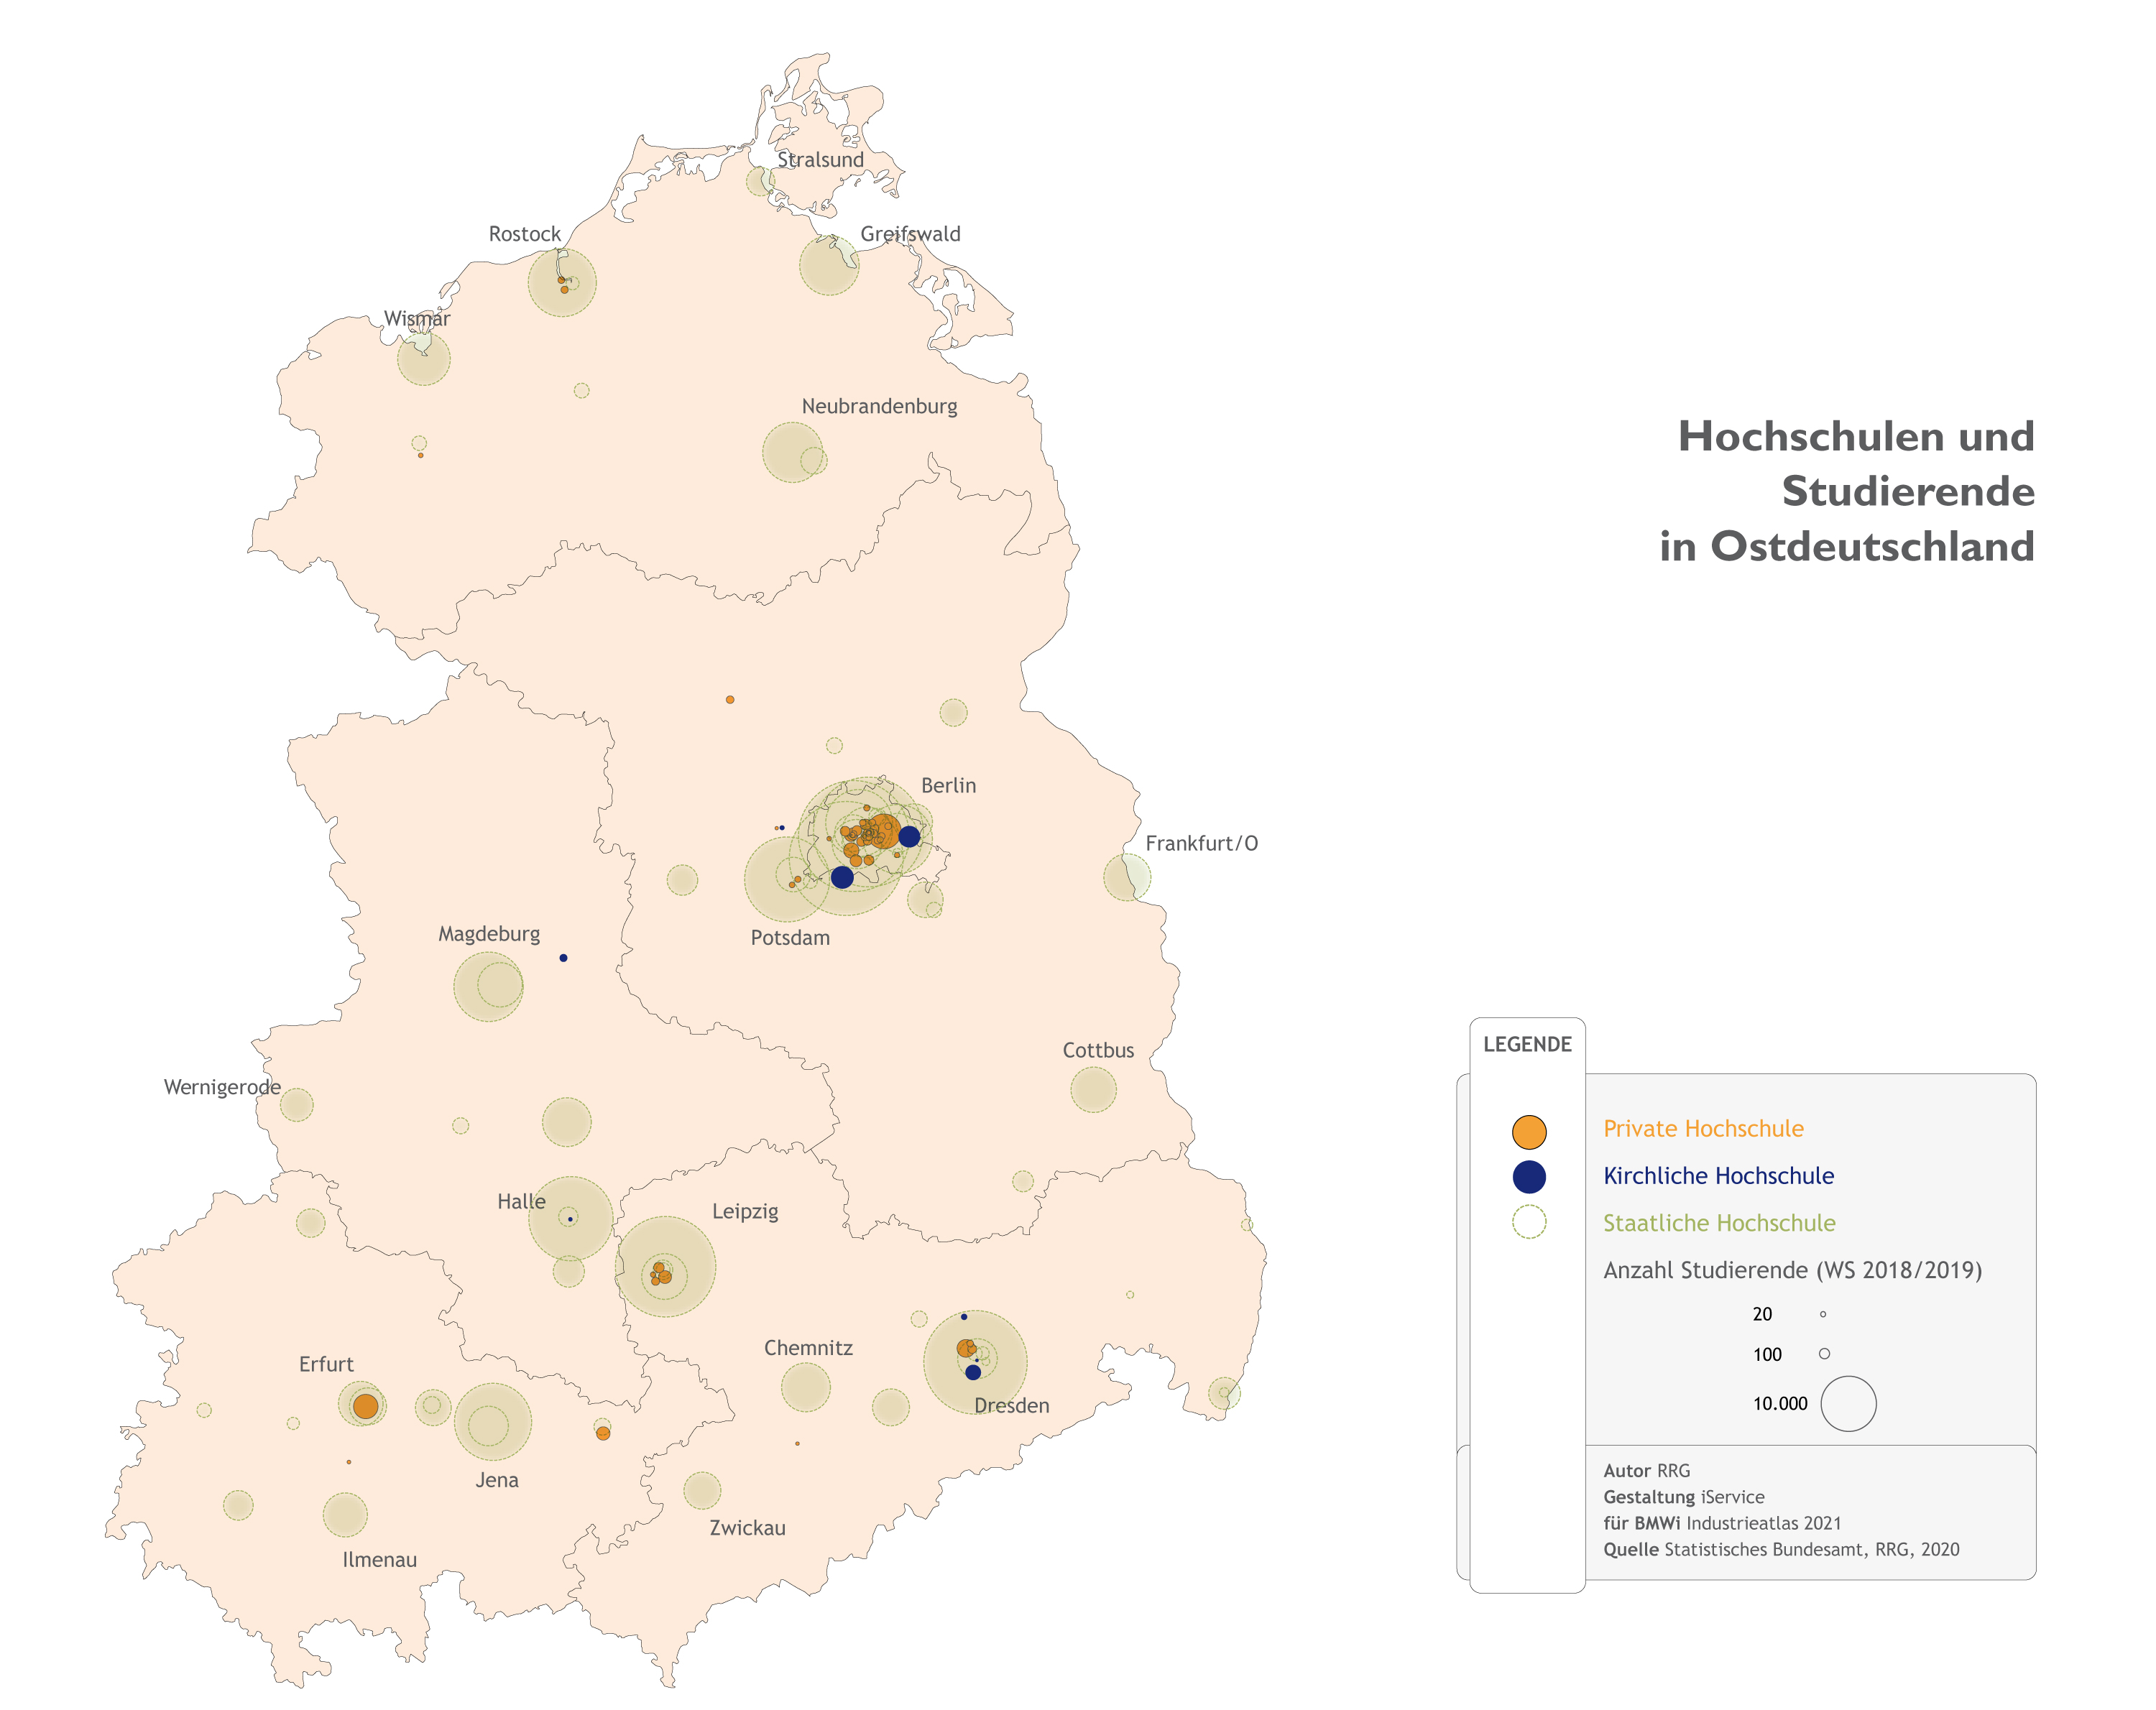 Hochschulen und Studierende in Ostdeutschland